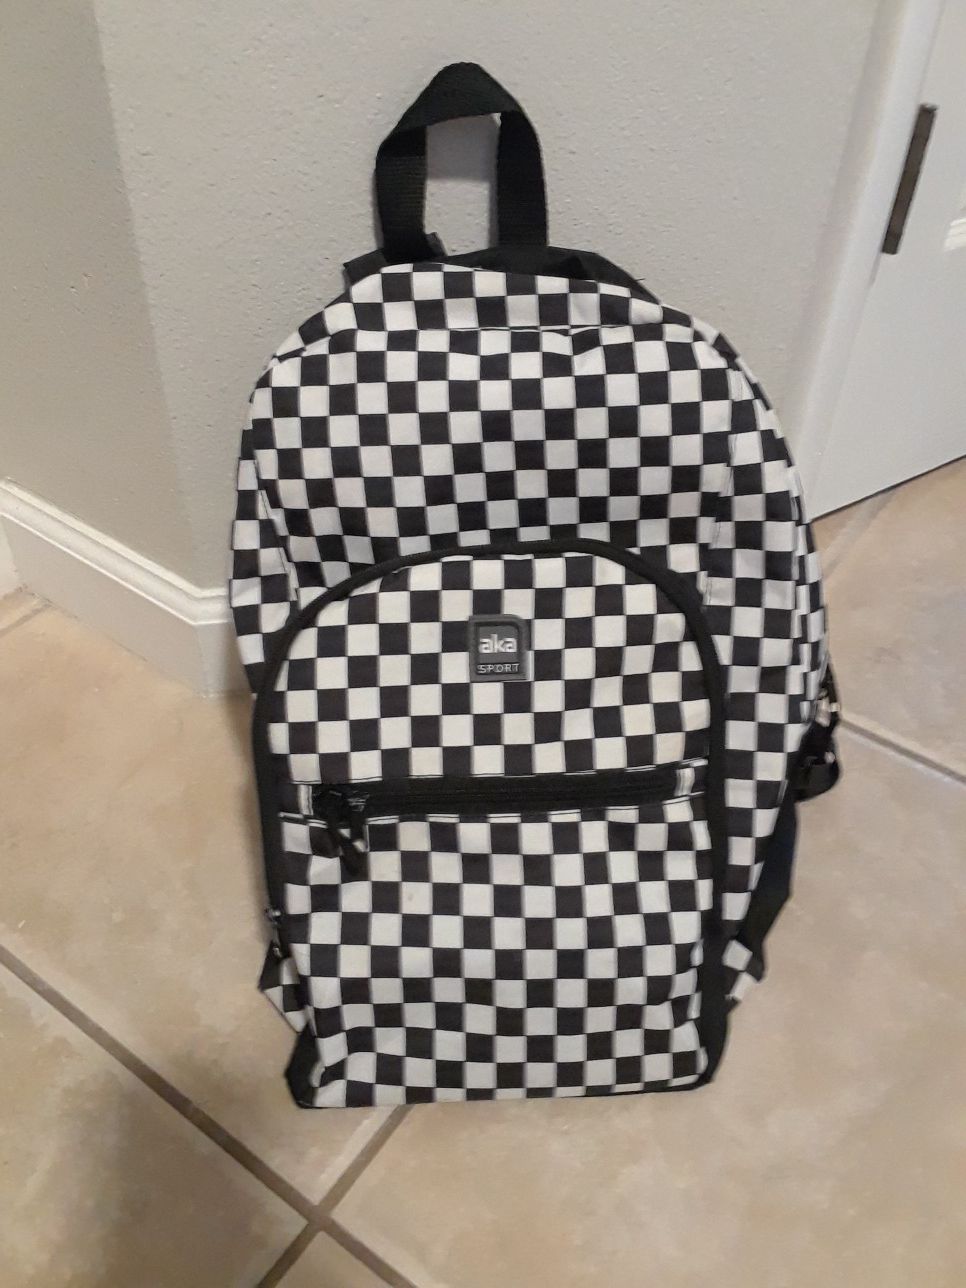 Aka Sport backpack